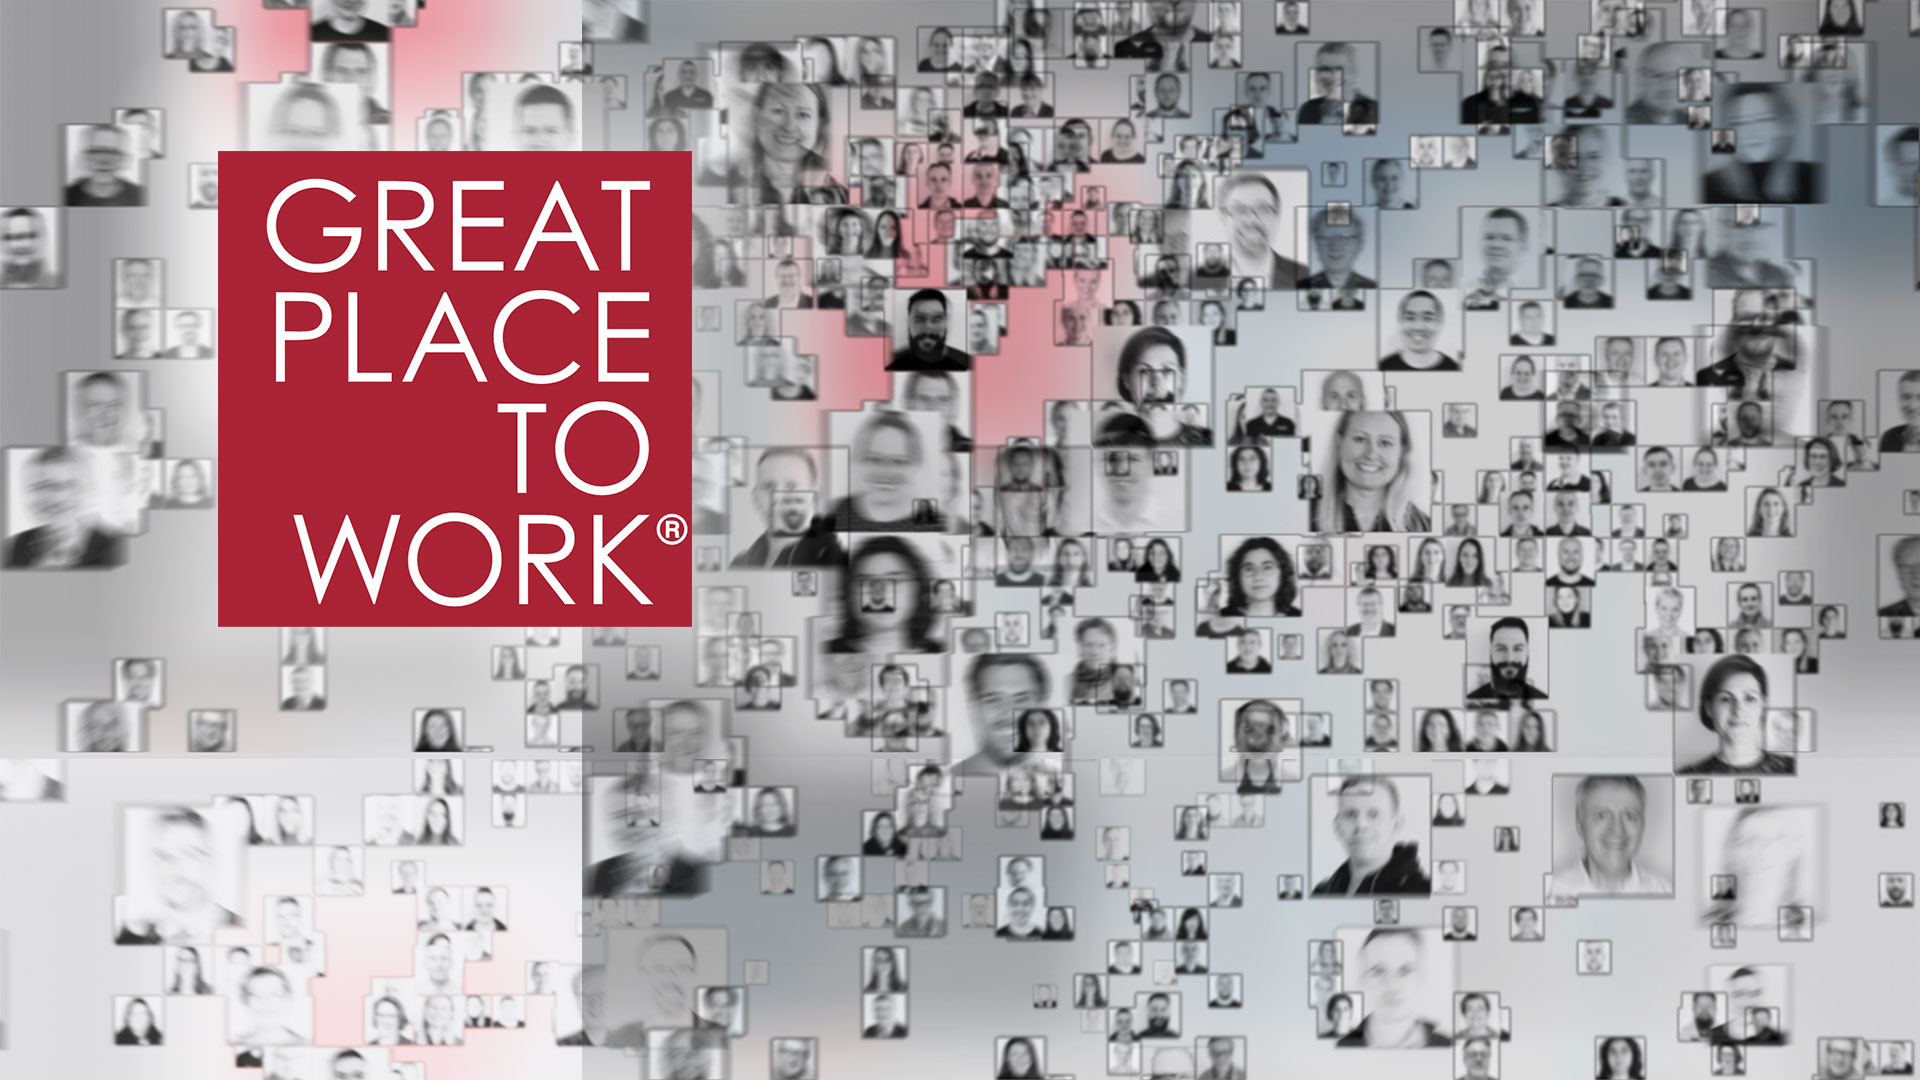 Montasjebilde av Element Logic-ansatte med Great Place to Work-logo